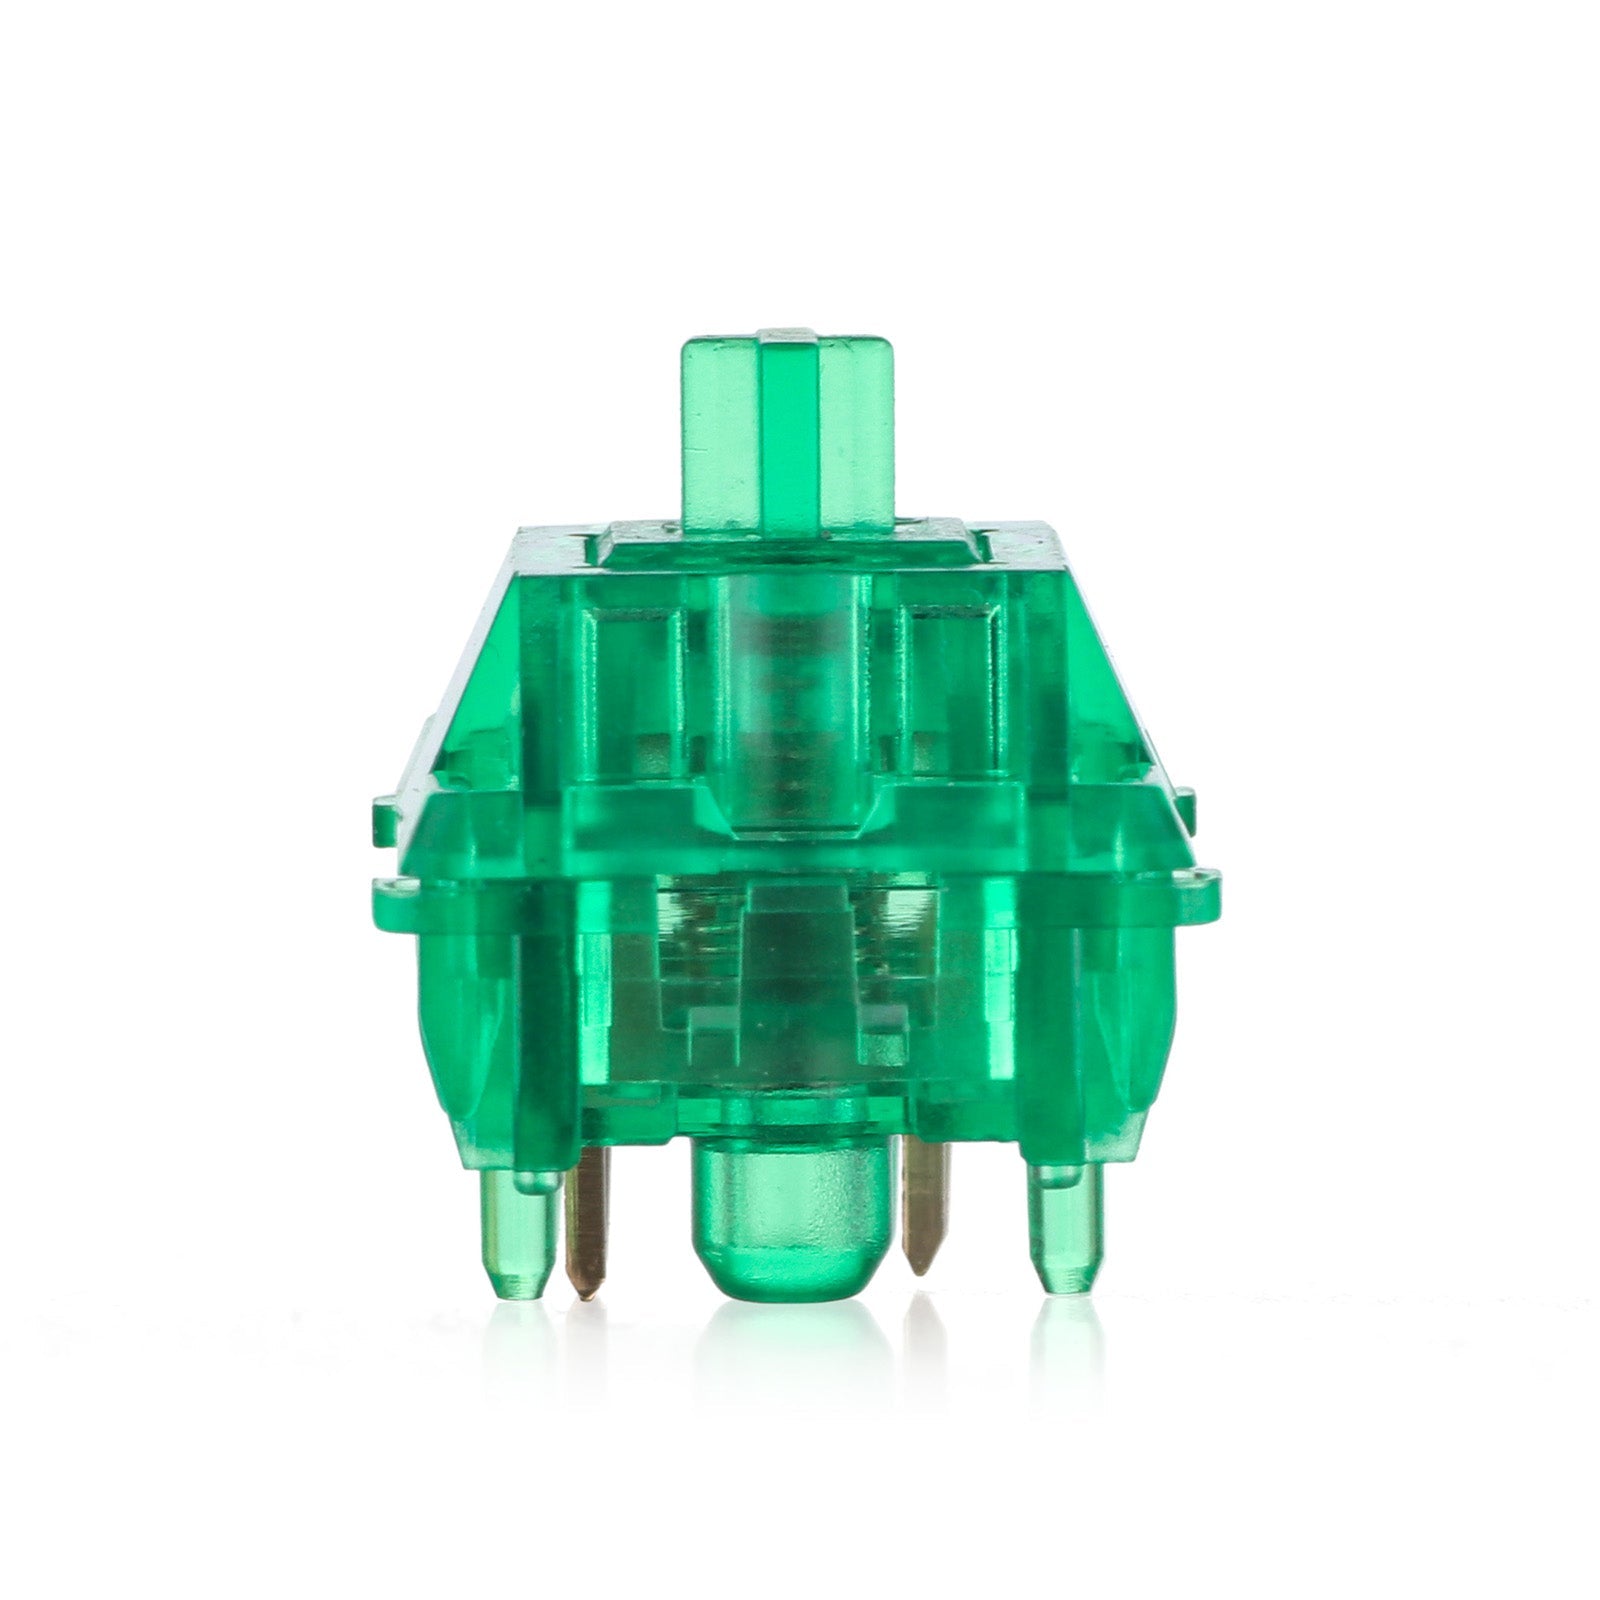 KiiBoom Emerald Switches